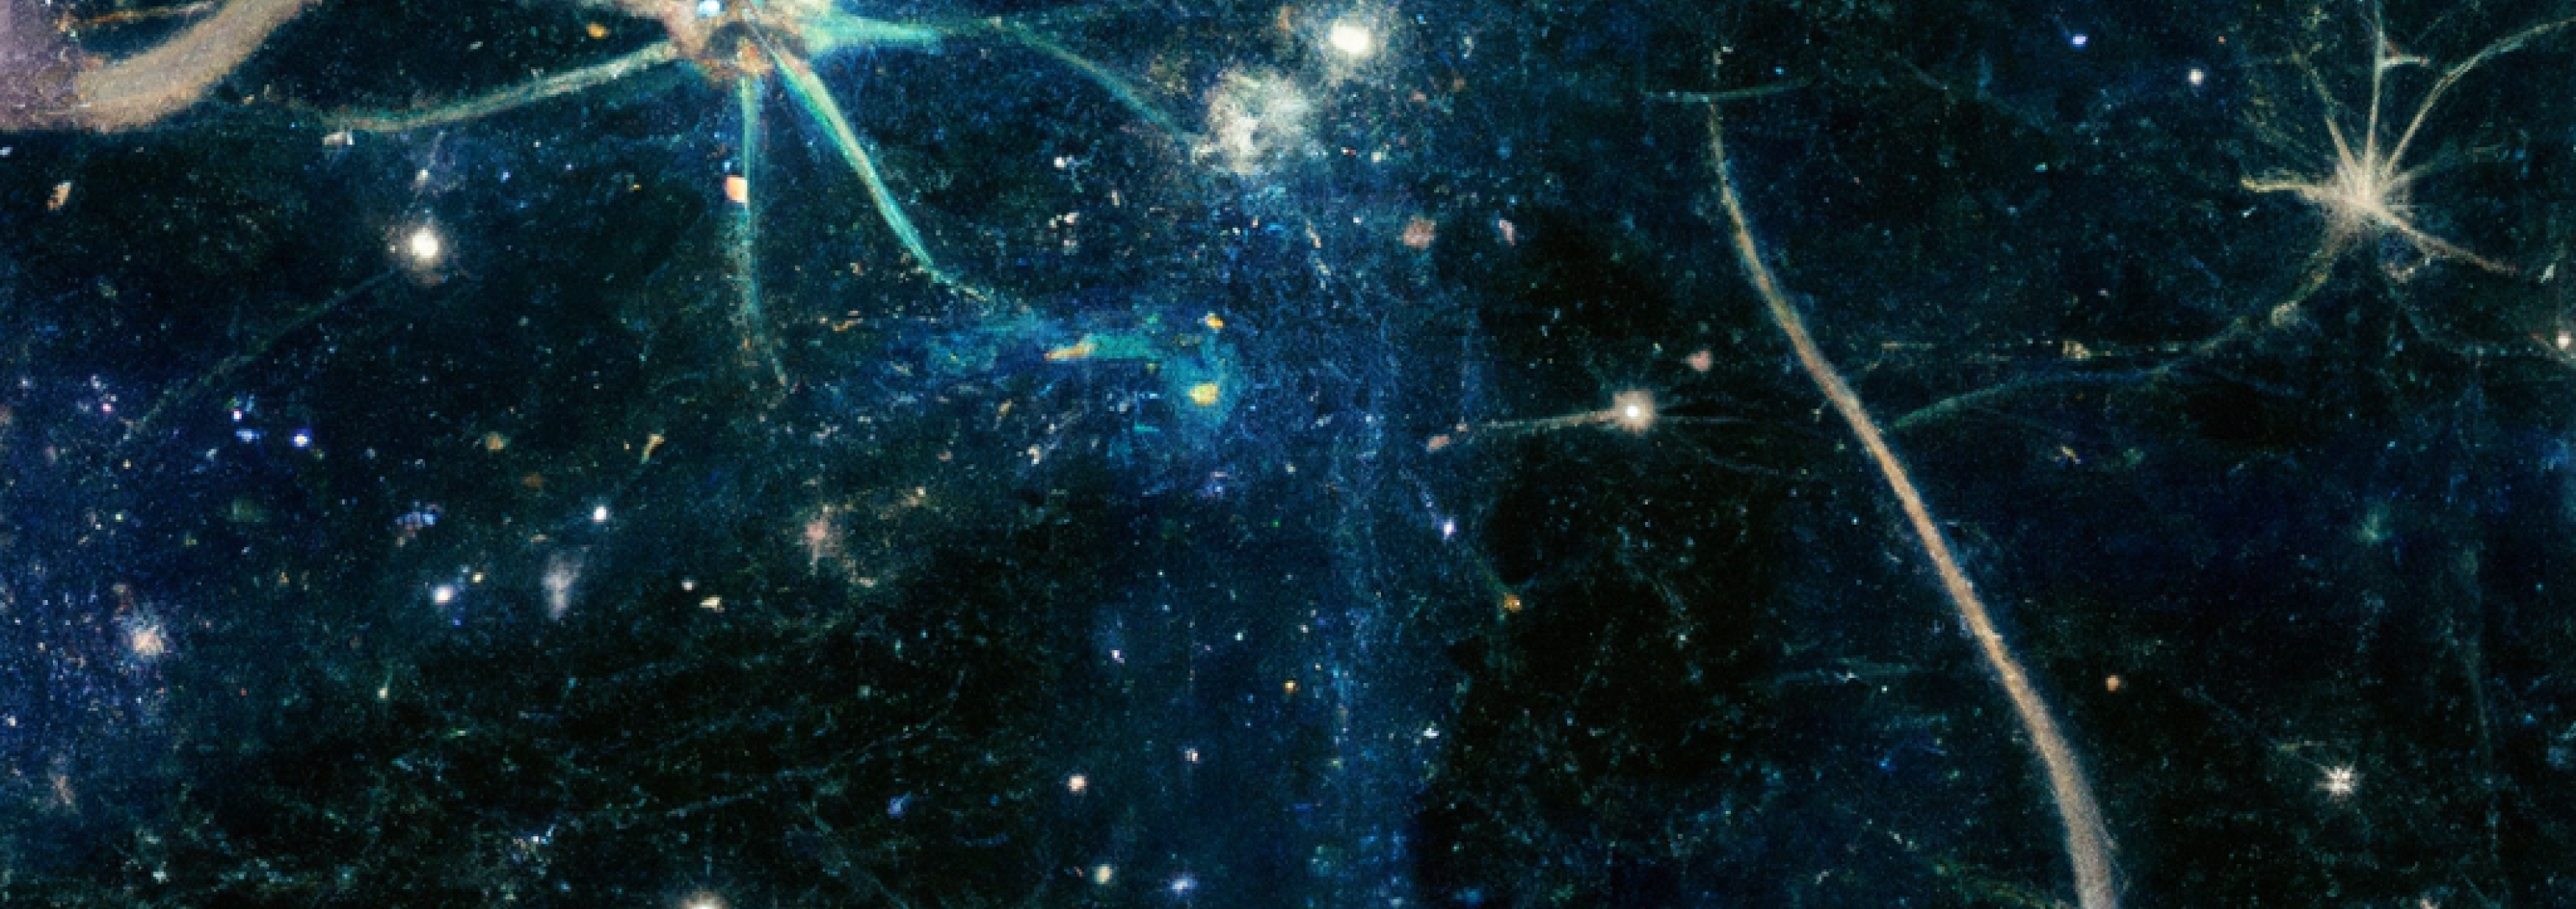 Neuronen in einer Galaxie, generiert von DALL-E